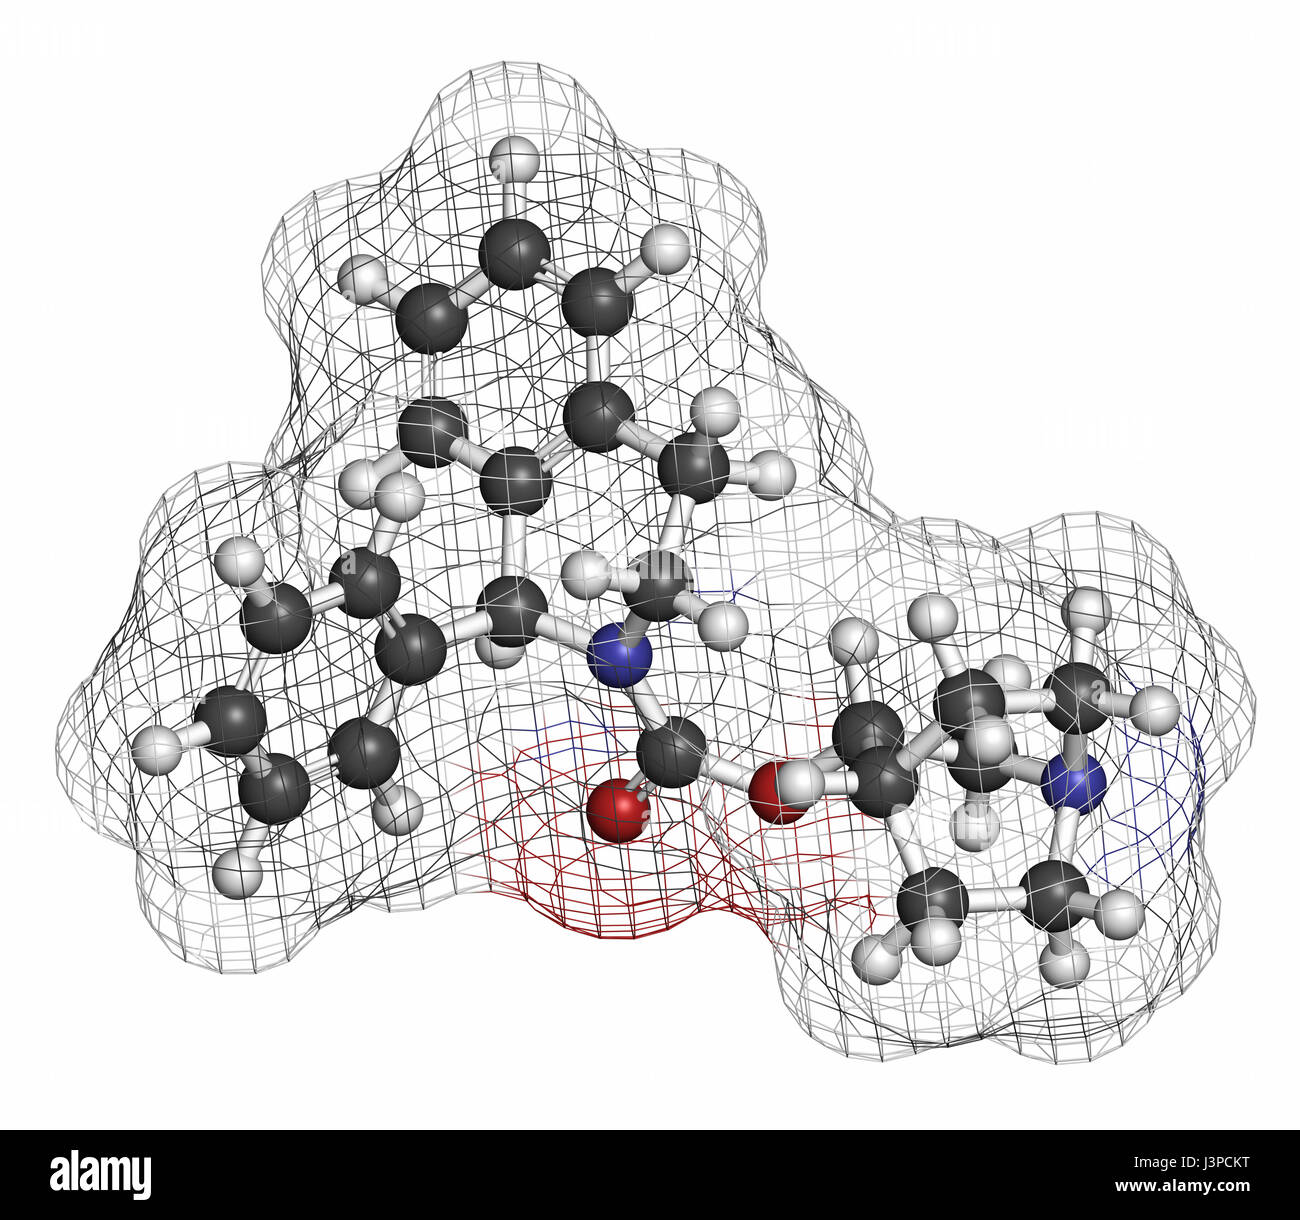 Solifenacin überaktive Blase Wirkstoffmolekül. Atome sind als Kugeln mit konventionellen Farbcodierung vertreten: Wasserstoff (weiß), Kohlenstoff (grau), Sauerstoff Stockfoto